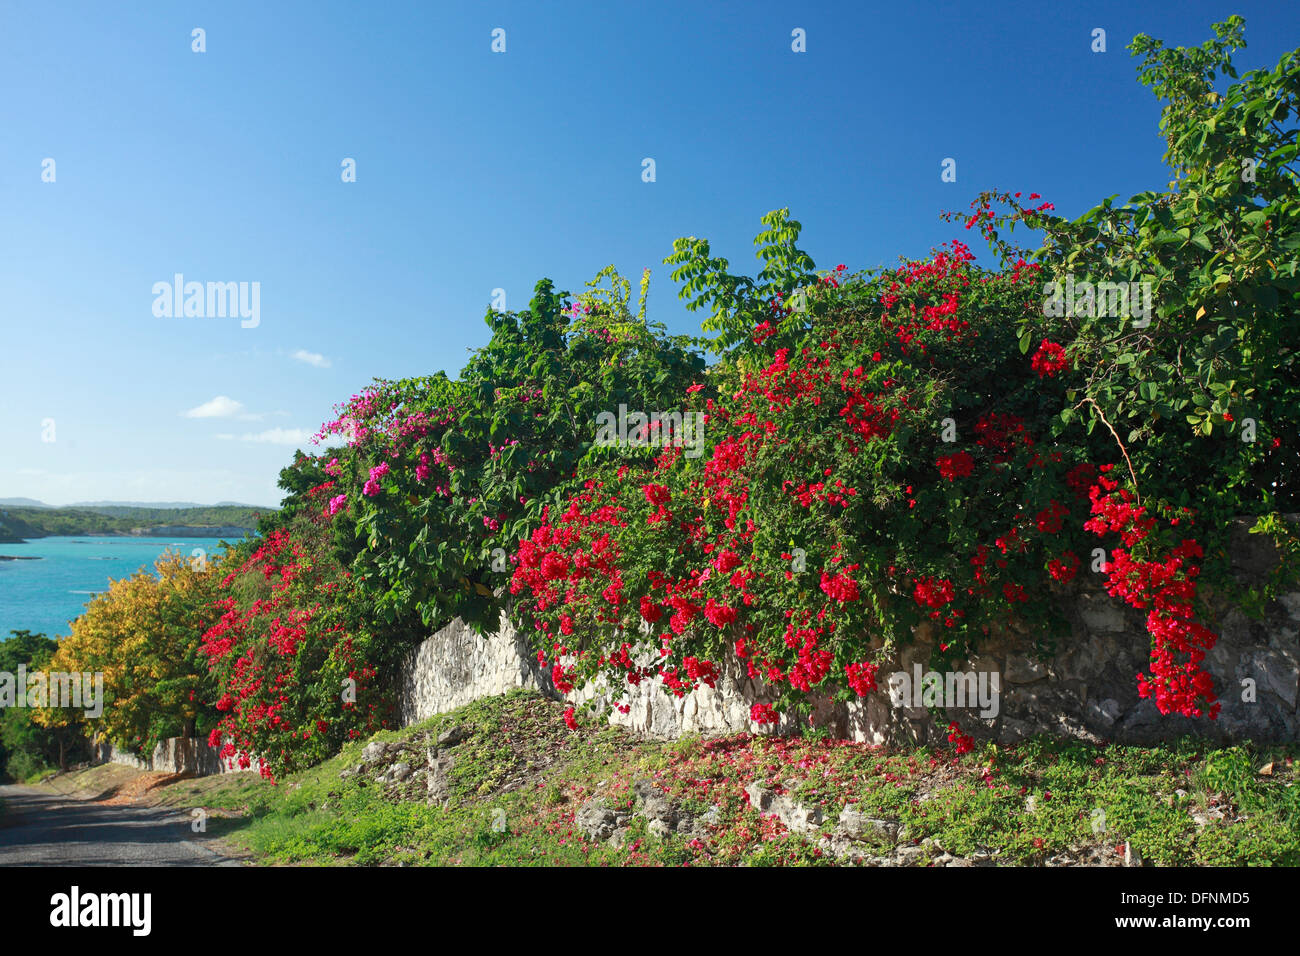 Vue sur la côte atlantique et arbustes fleuris, Antigua, Antilles, Caraïbes, Amérique Centrale, Amérique Latine Banque D'Images